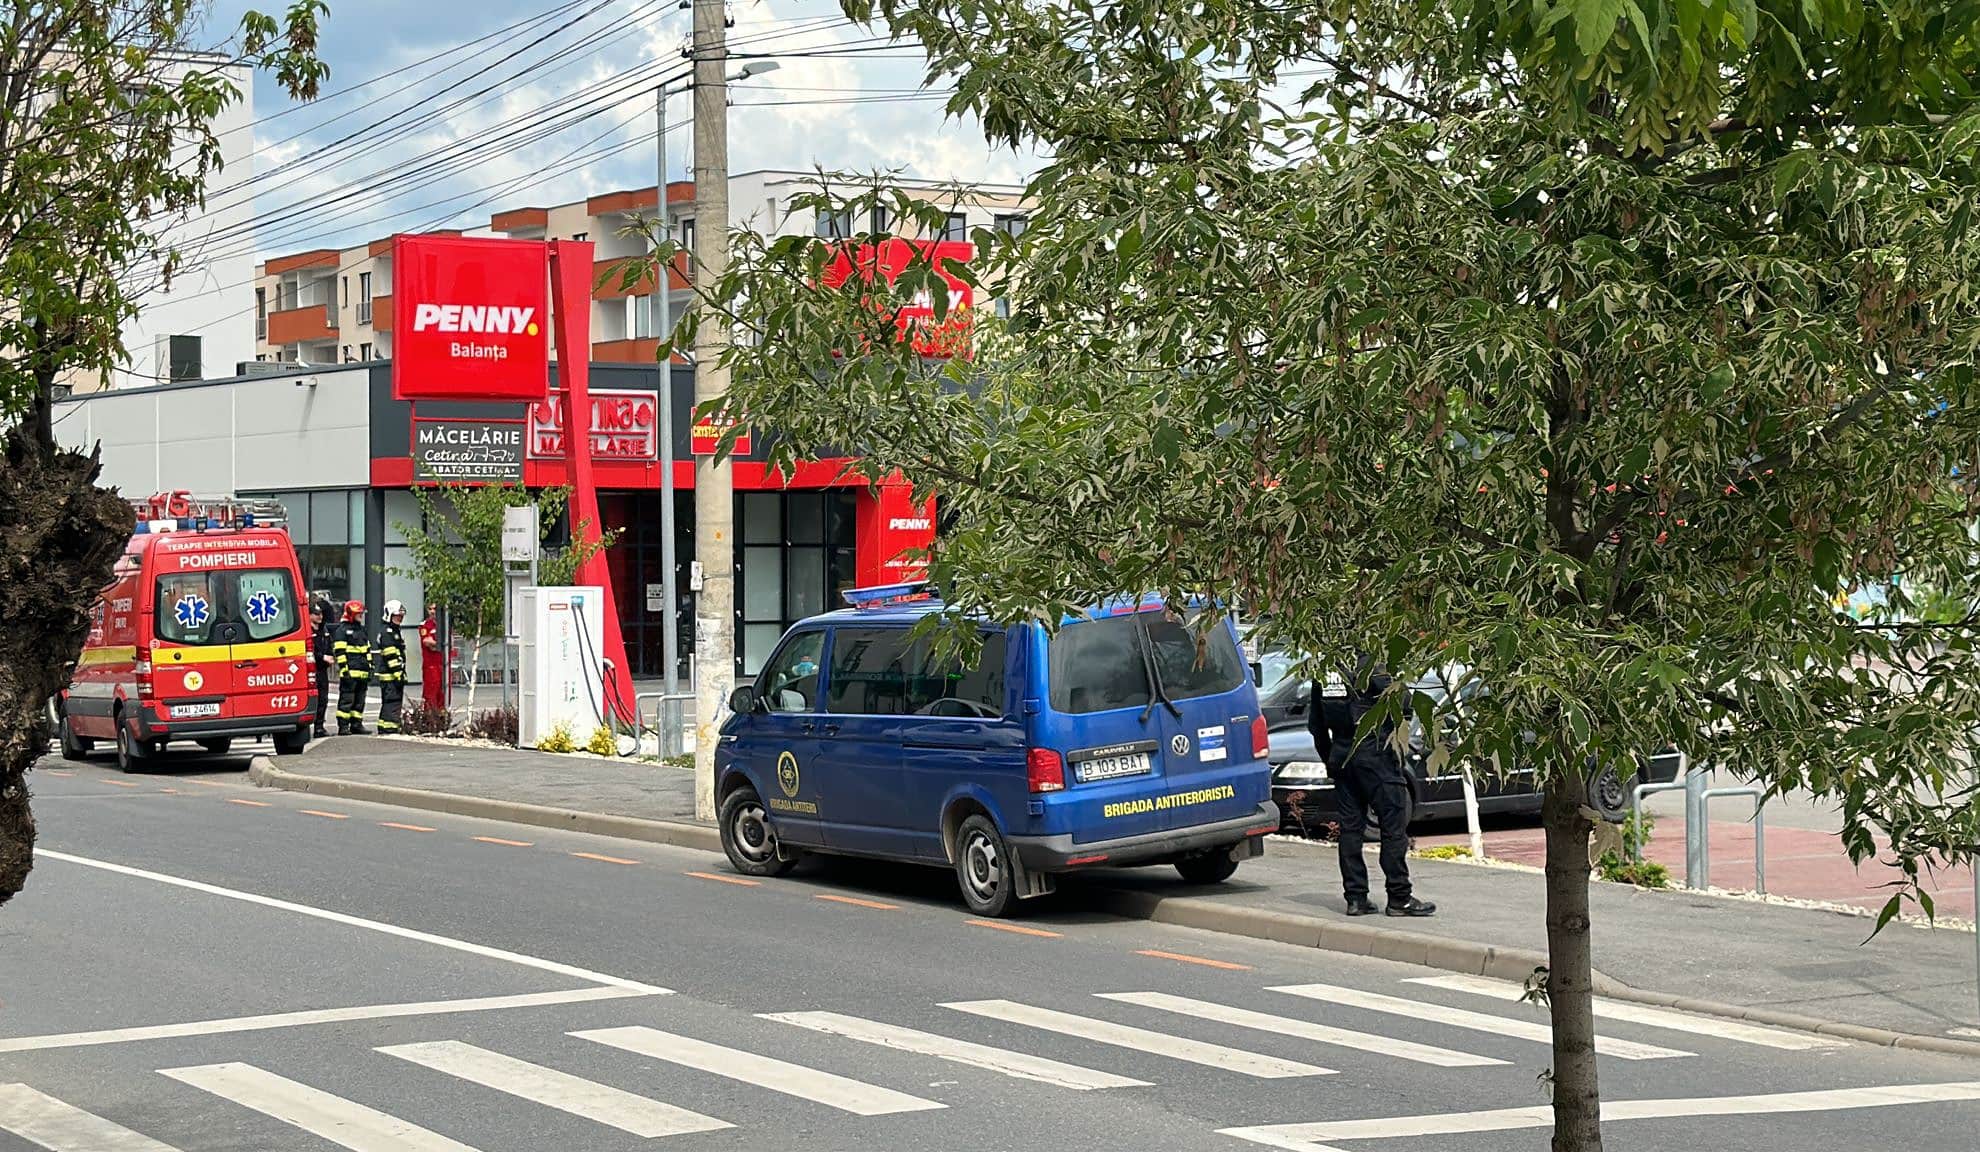 video foto: colet suspect în parcarea unui supermarket din gușterița - polițiști, jandarmi și echipe sri, prezente în zonă